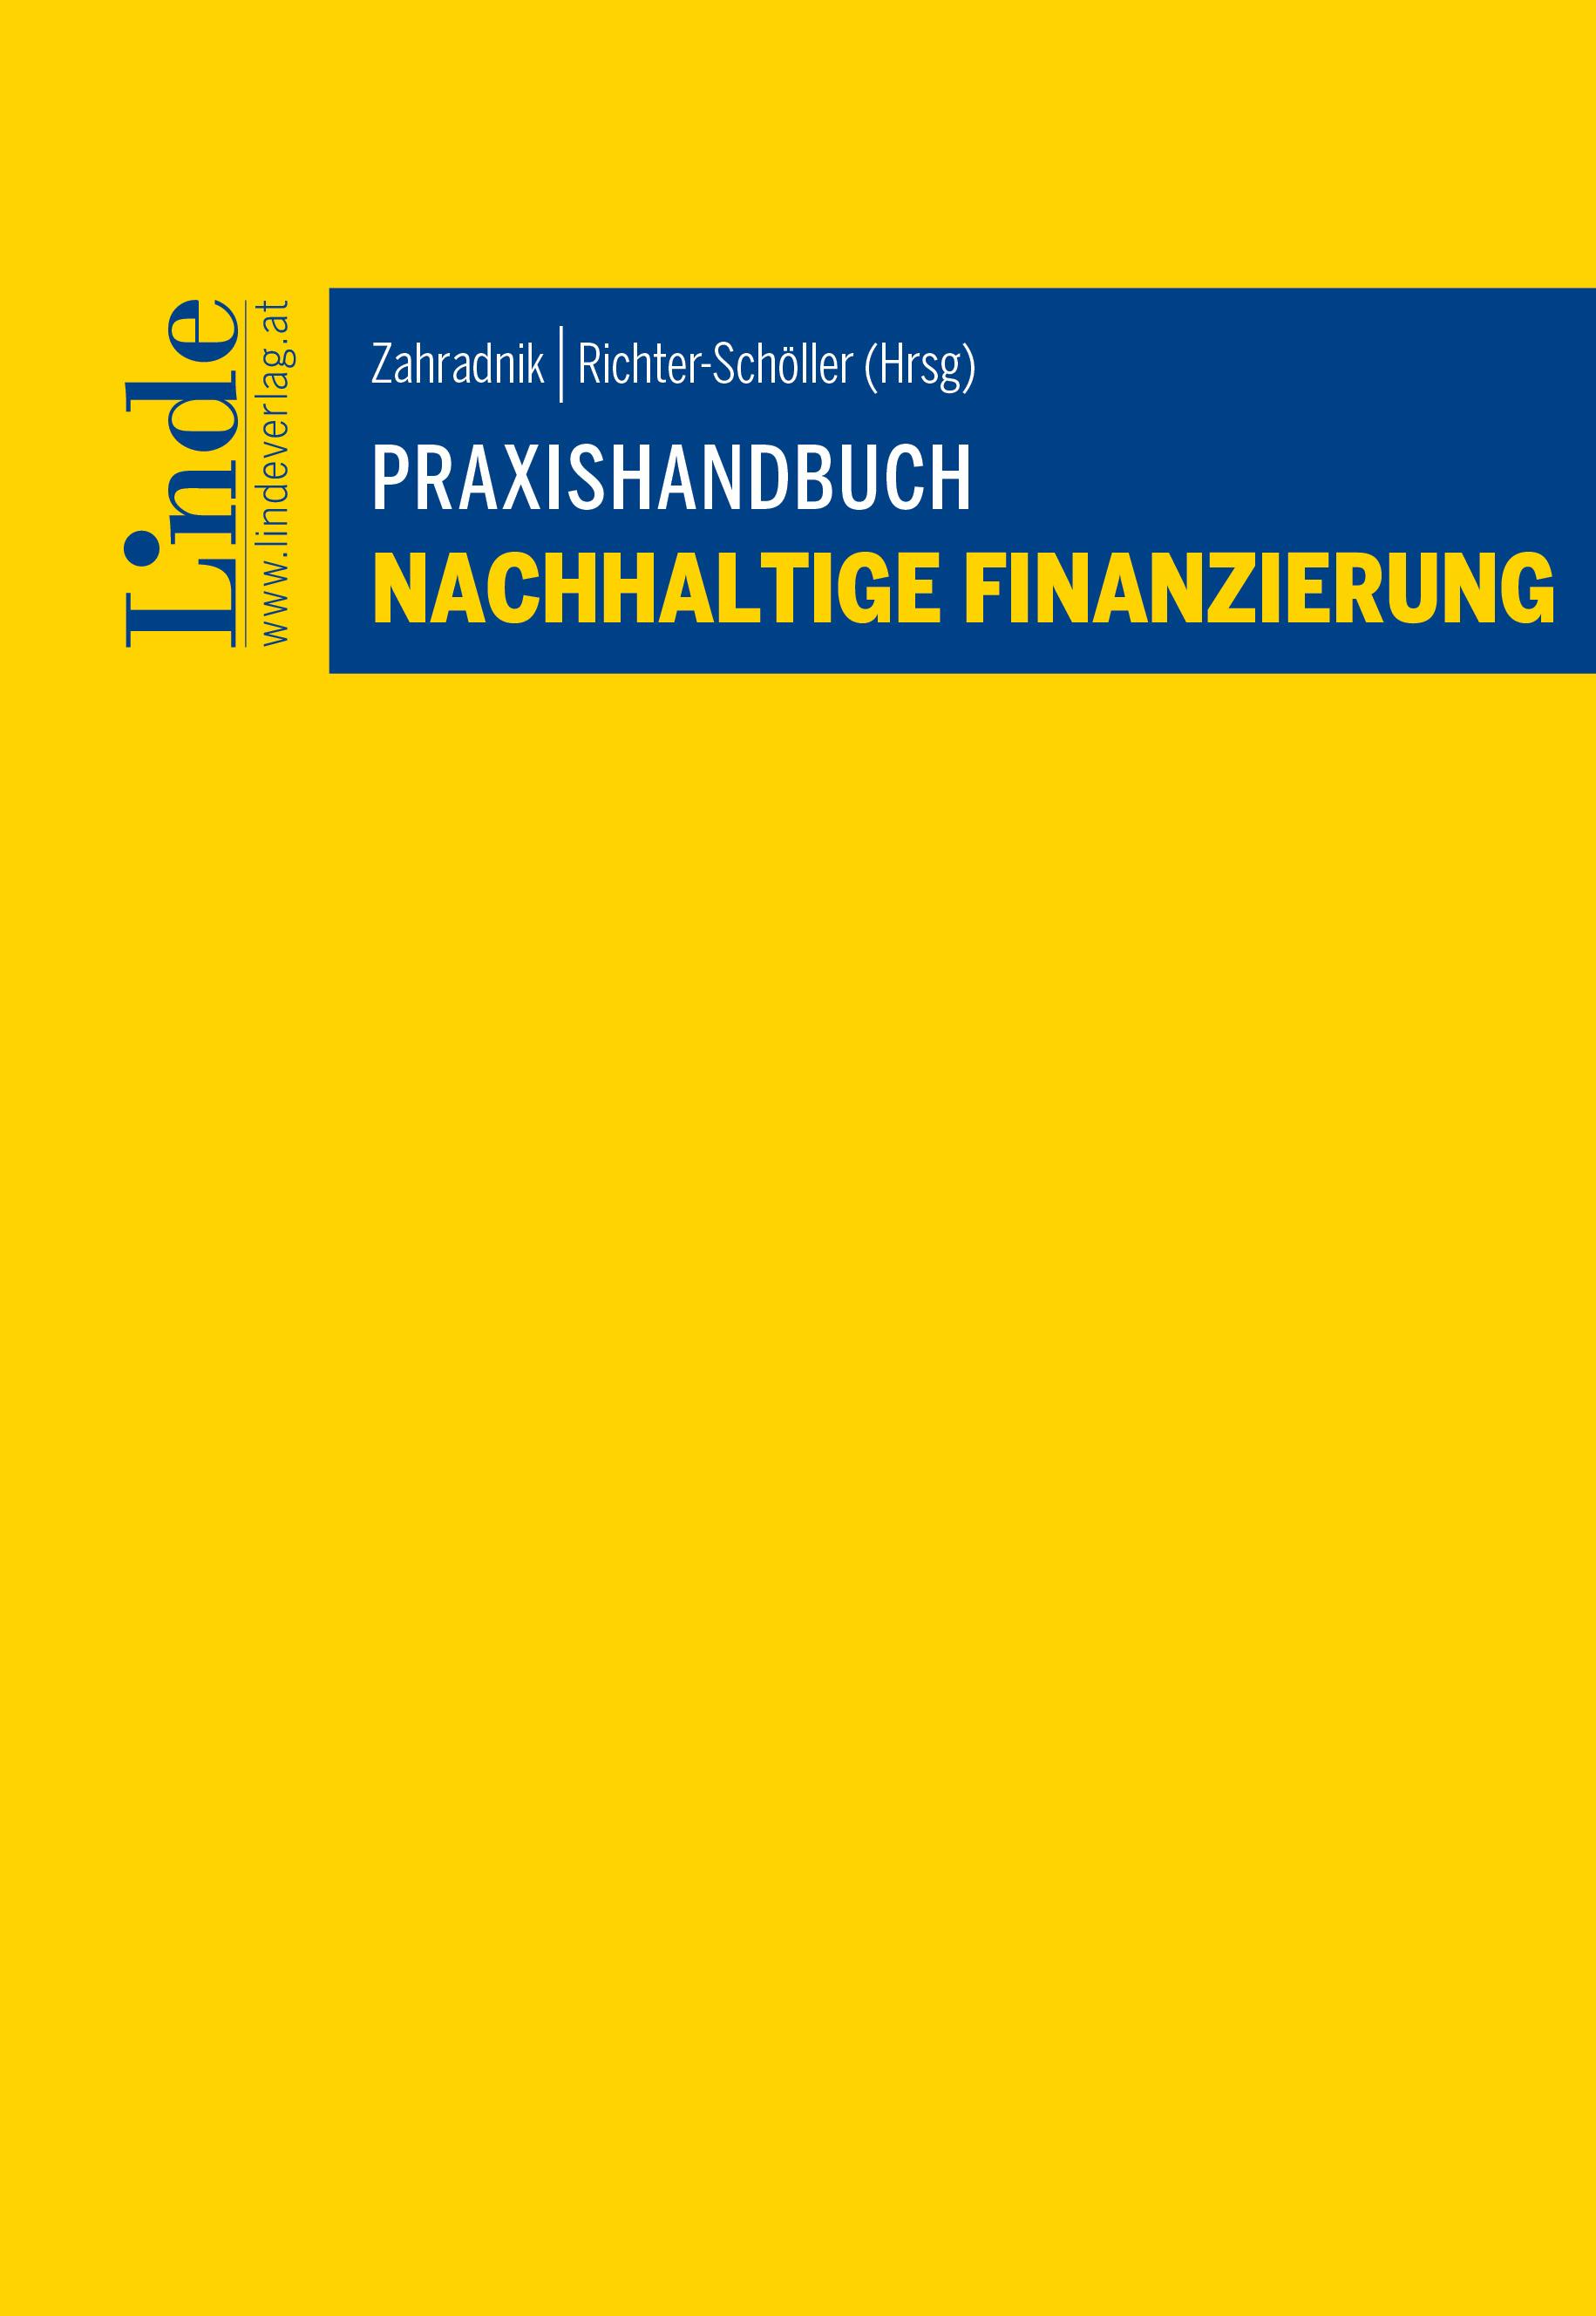 Zahradnik | Richter-Schöller (Hrsg.)
Praxishandbuch Nachhaltige Finanzierung